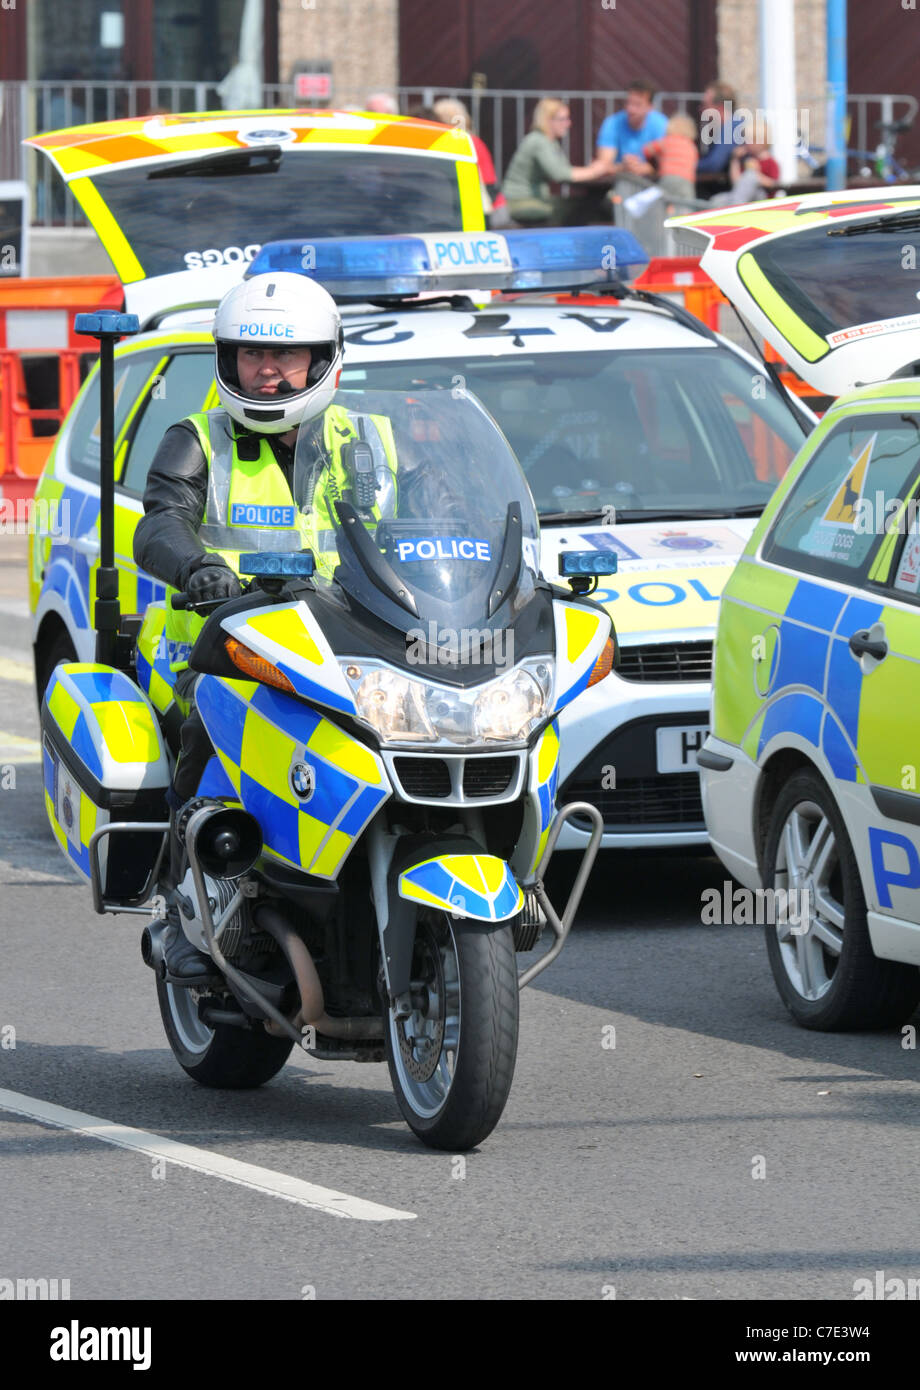 Agent de police, moto policier en service, Grande-Bretagne, Royaume-Uni Banque D'Images